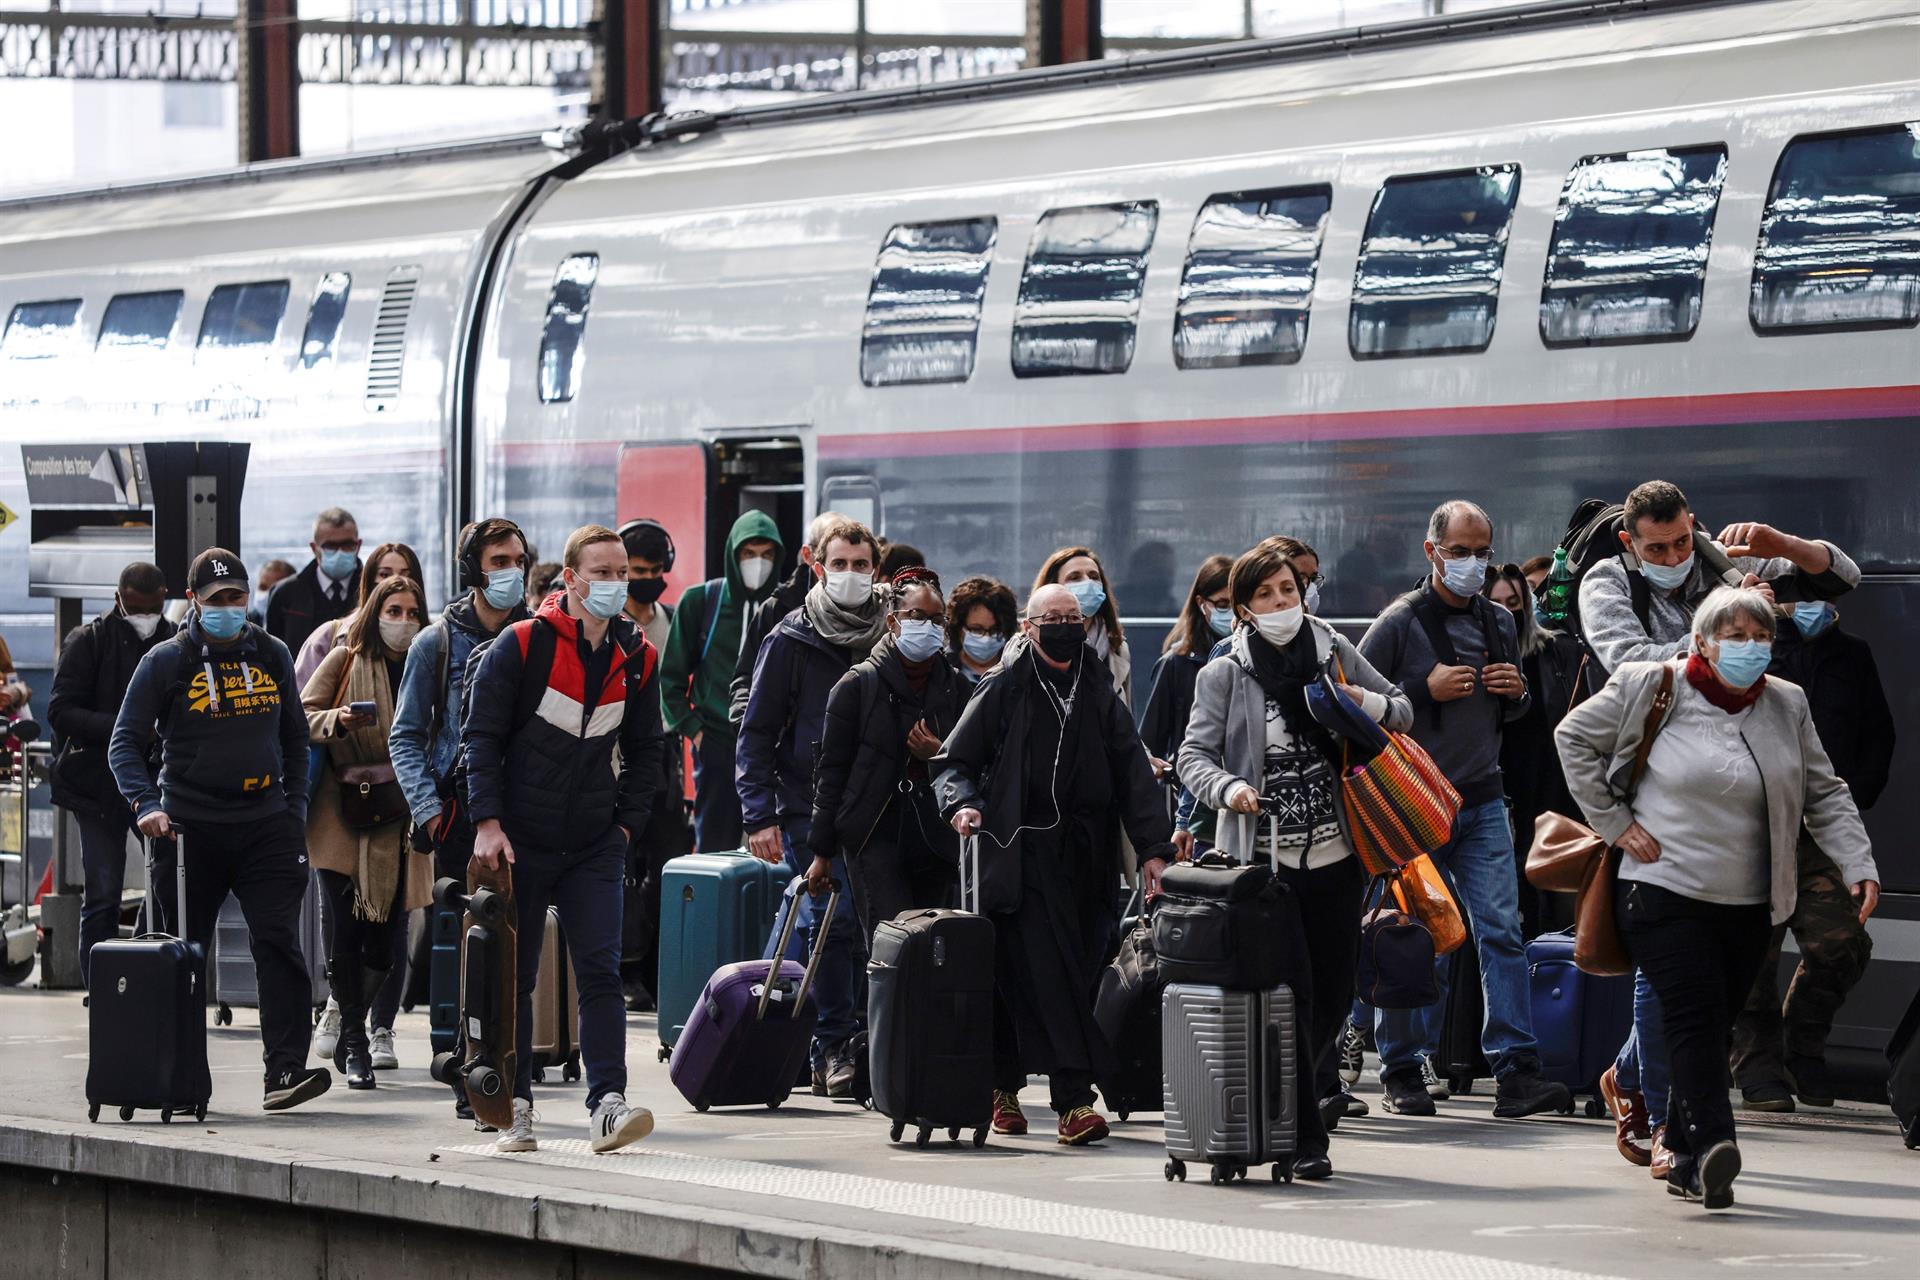 Passageiros desembarcam de trem na estação Gare de Lyon em Paris, na França